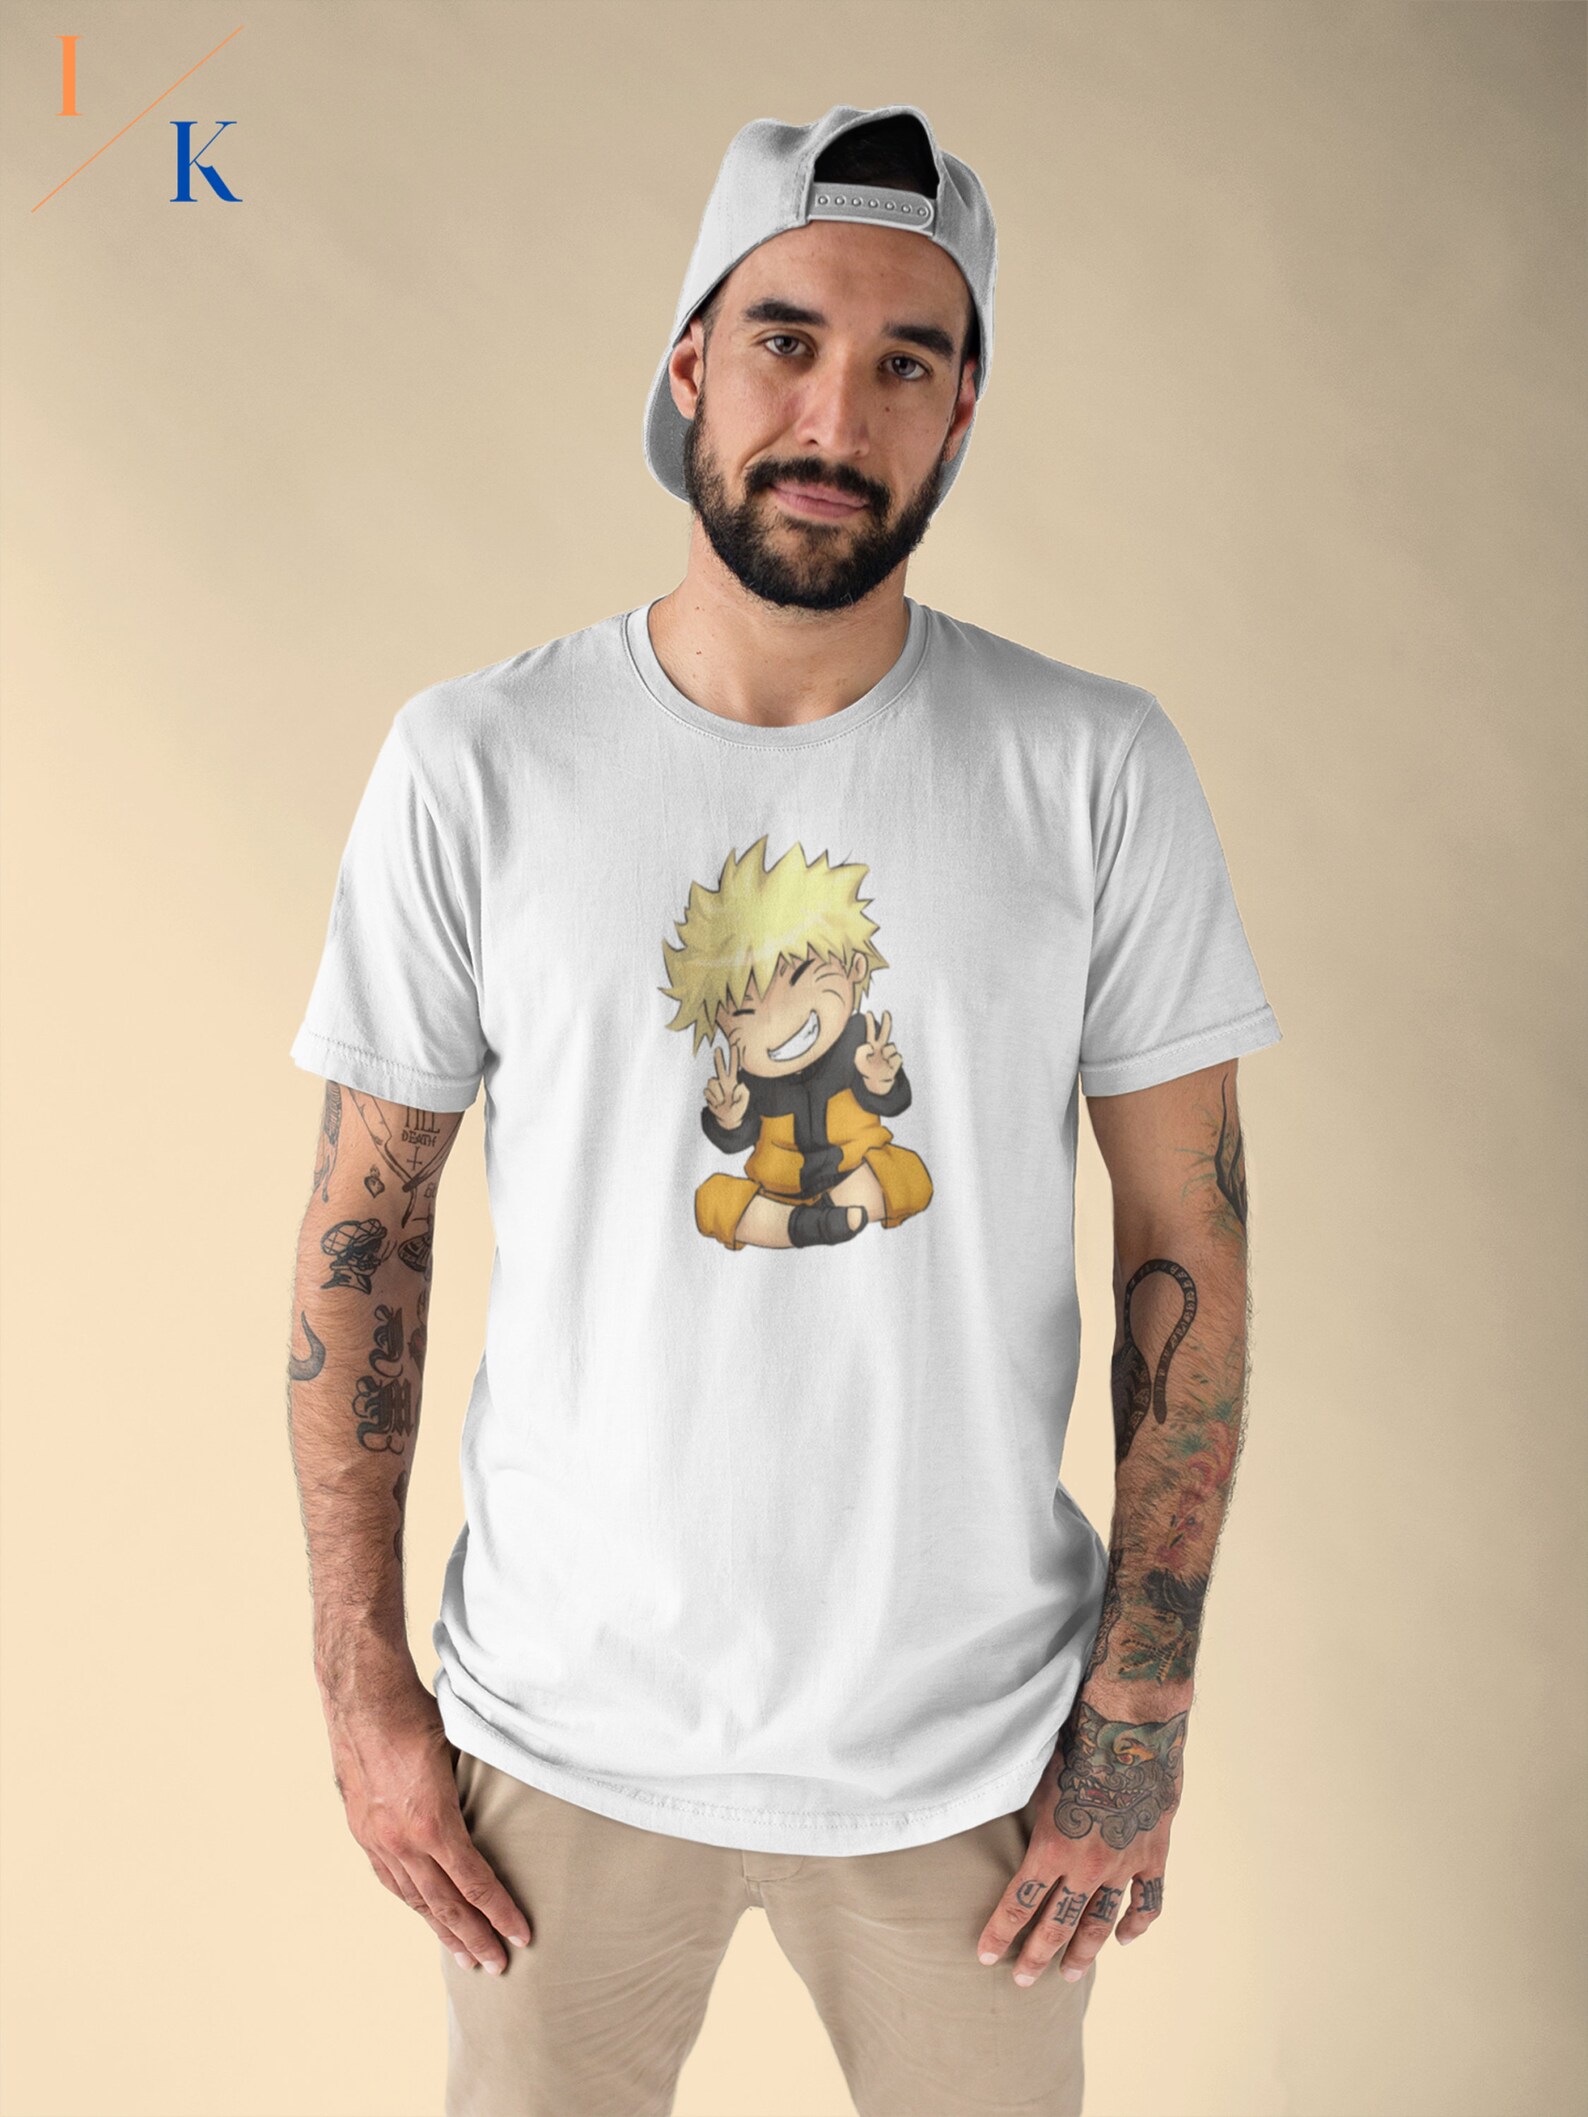 Naruto / naruto shirt / anime / naruto anime / anime tshirt / | Etsy